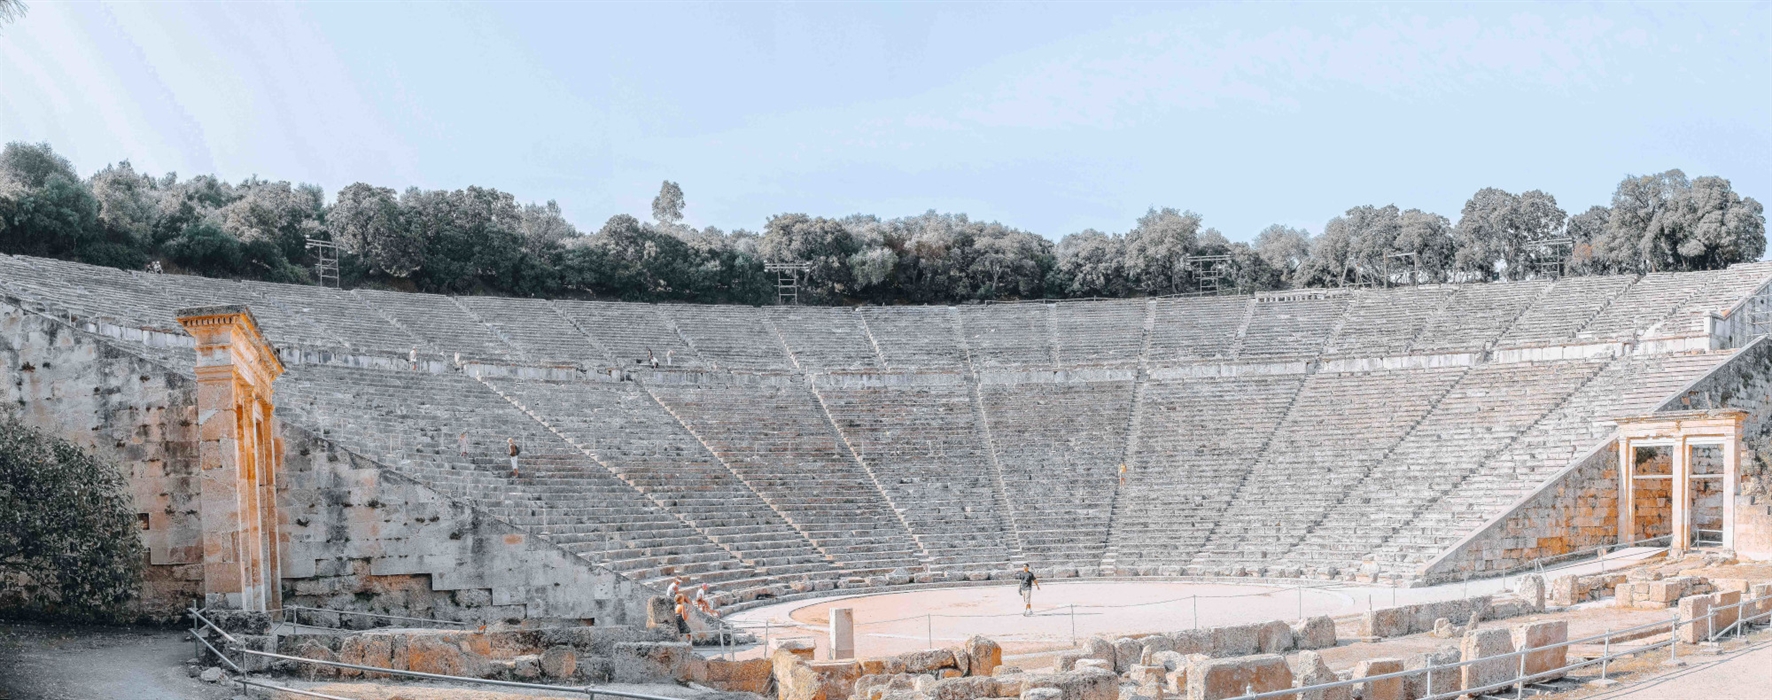 The ancient theatre of Epidaurus 2